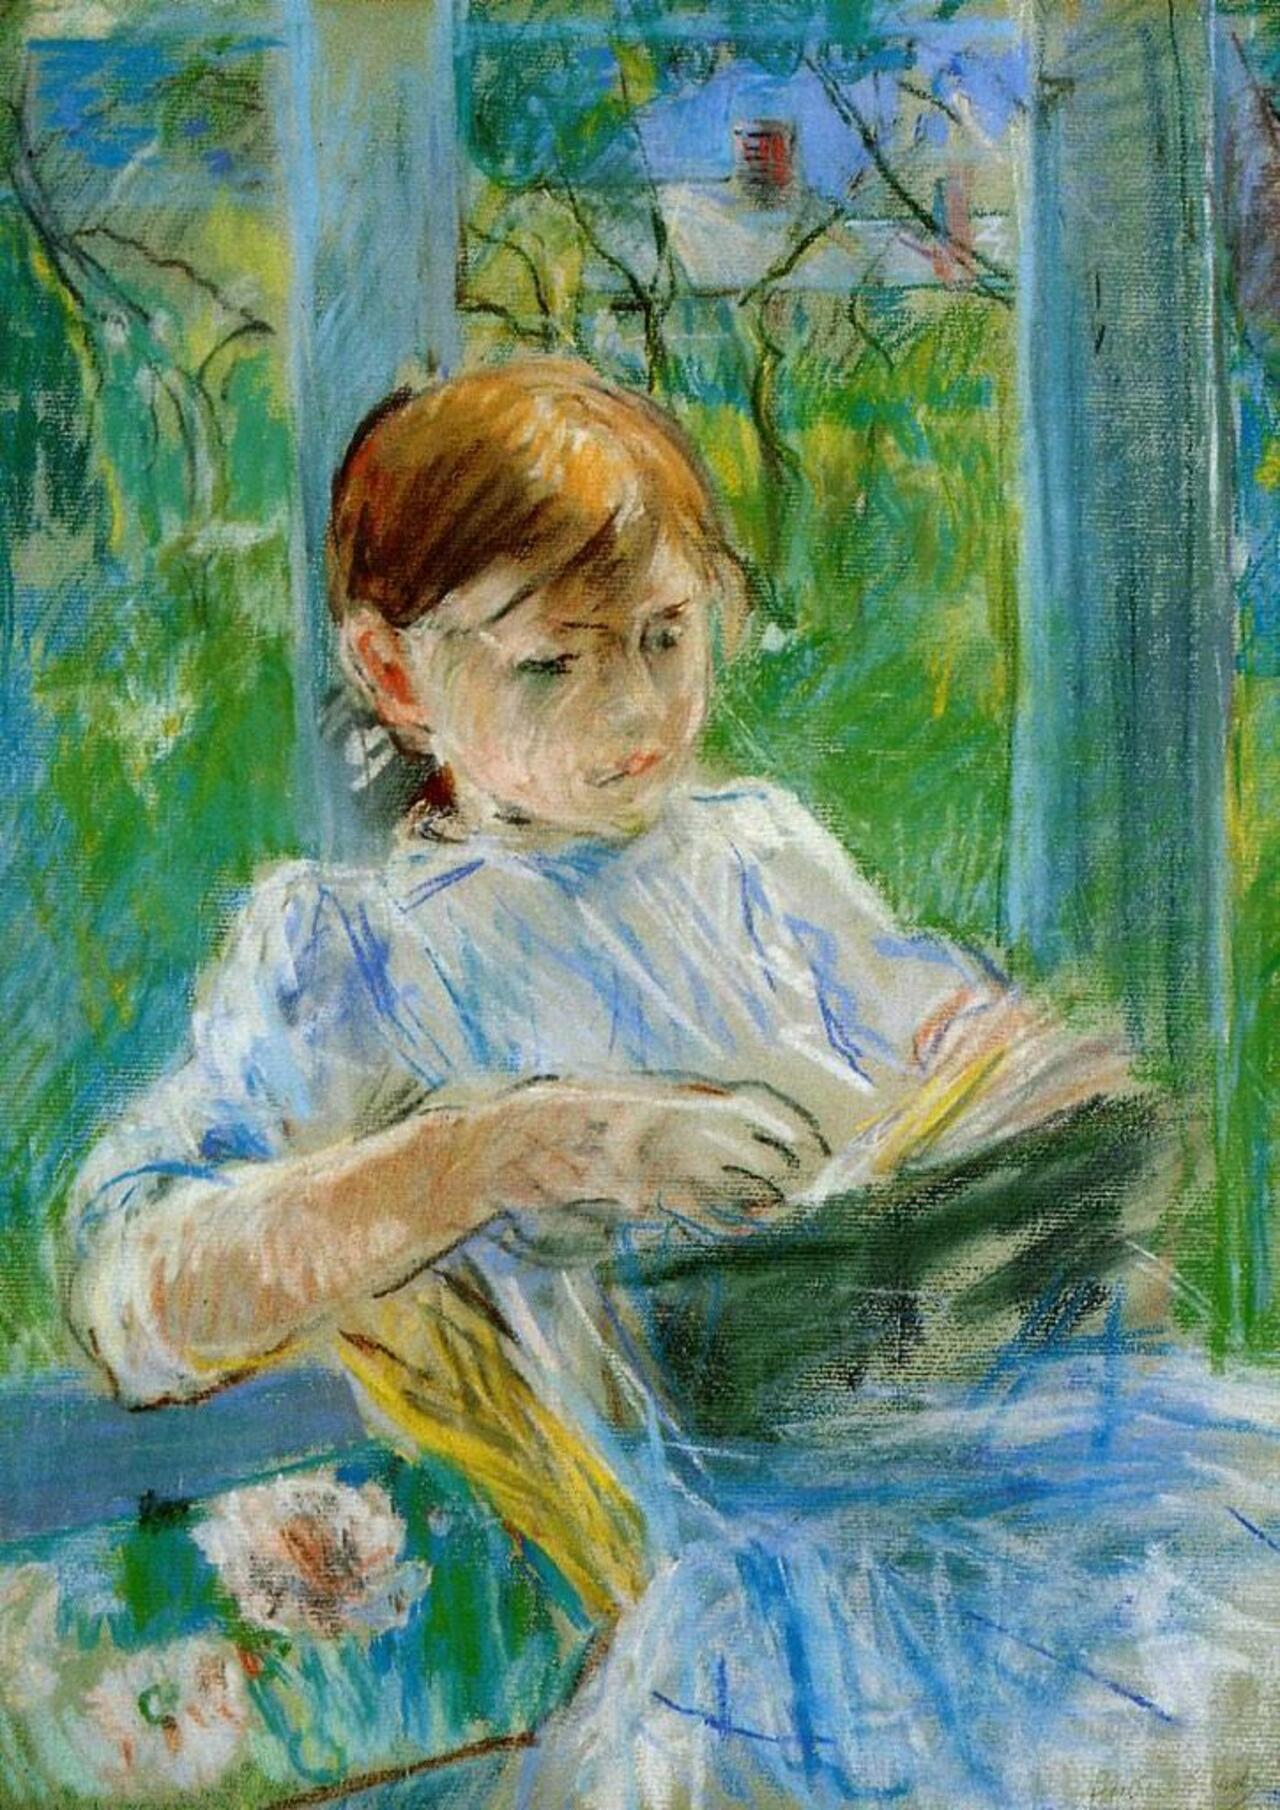 "@geminicat7: 'Portrait of the Artist's Daughter, Julie Manet, at Gorey'
Berthe Morisot, 1886 #art http://t.co/9crjKEcm2w"